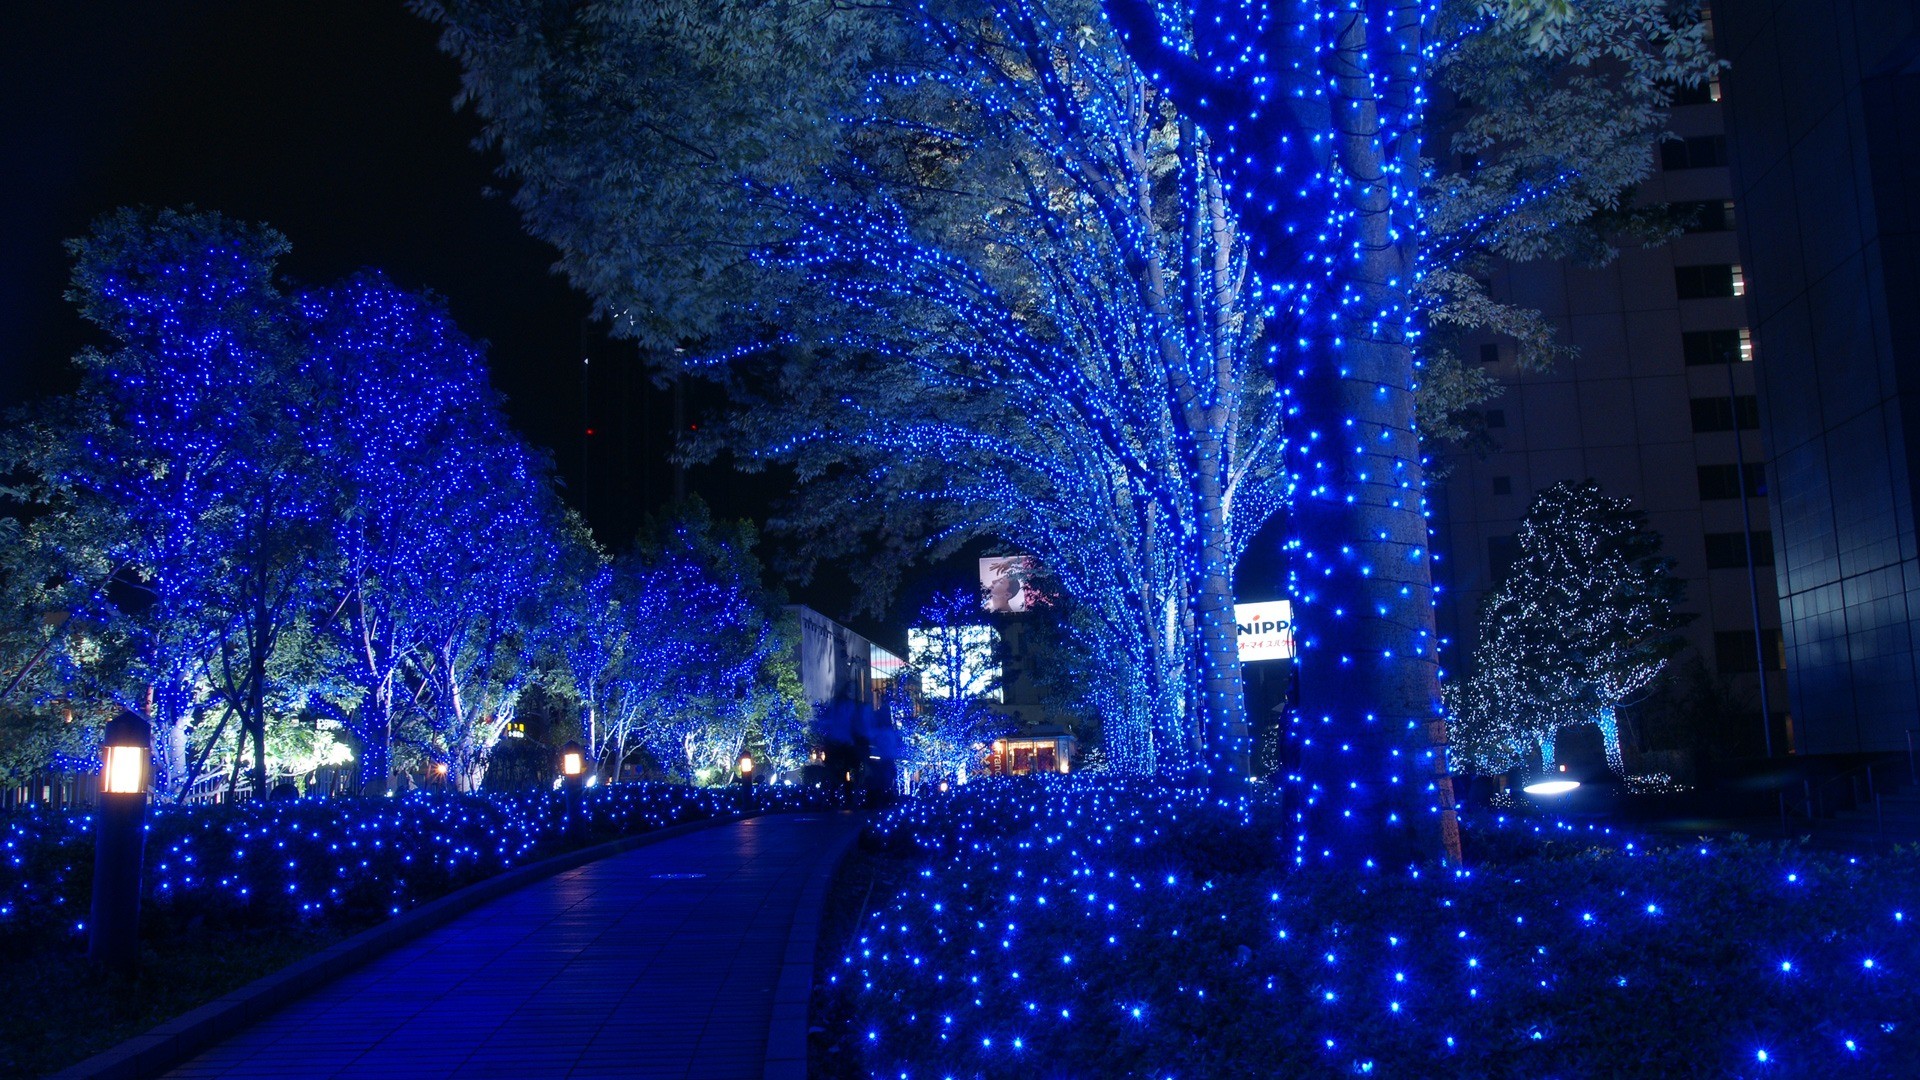 weihnachten tapete hd 1920x1080,blau,weihnachtsbeleuchtung,weihnachtsdekoration,beleuchtung,majorelle blau